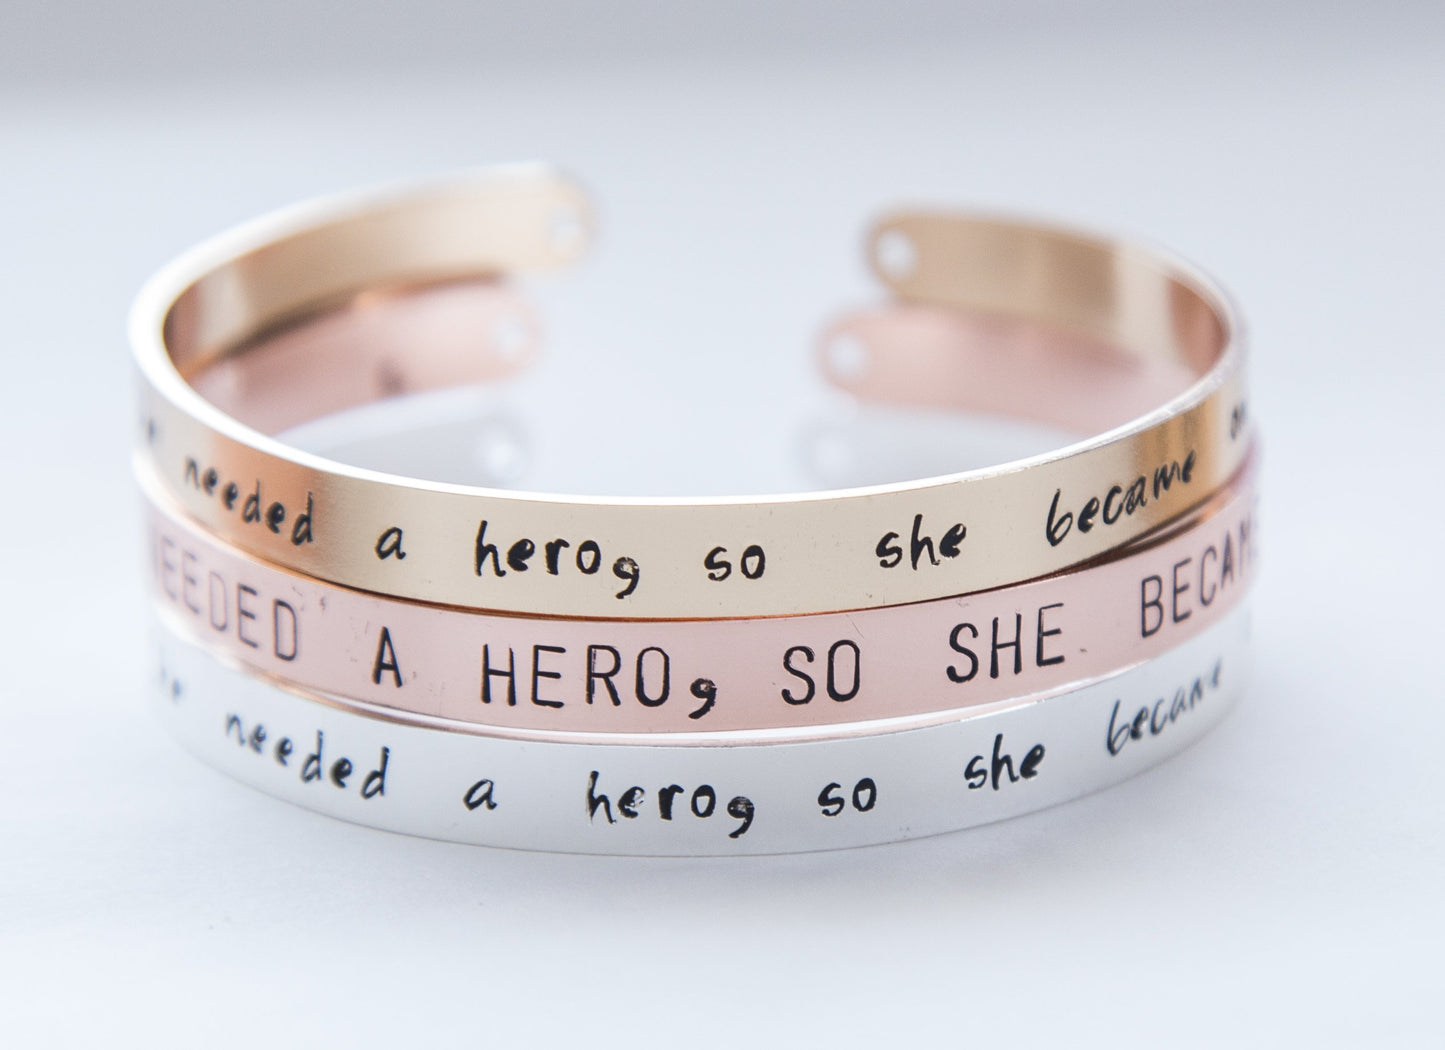 She needed a hero, so she became one - armband